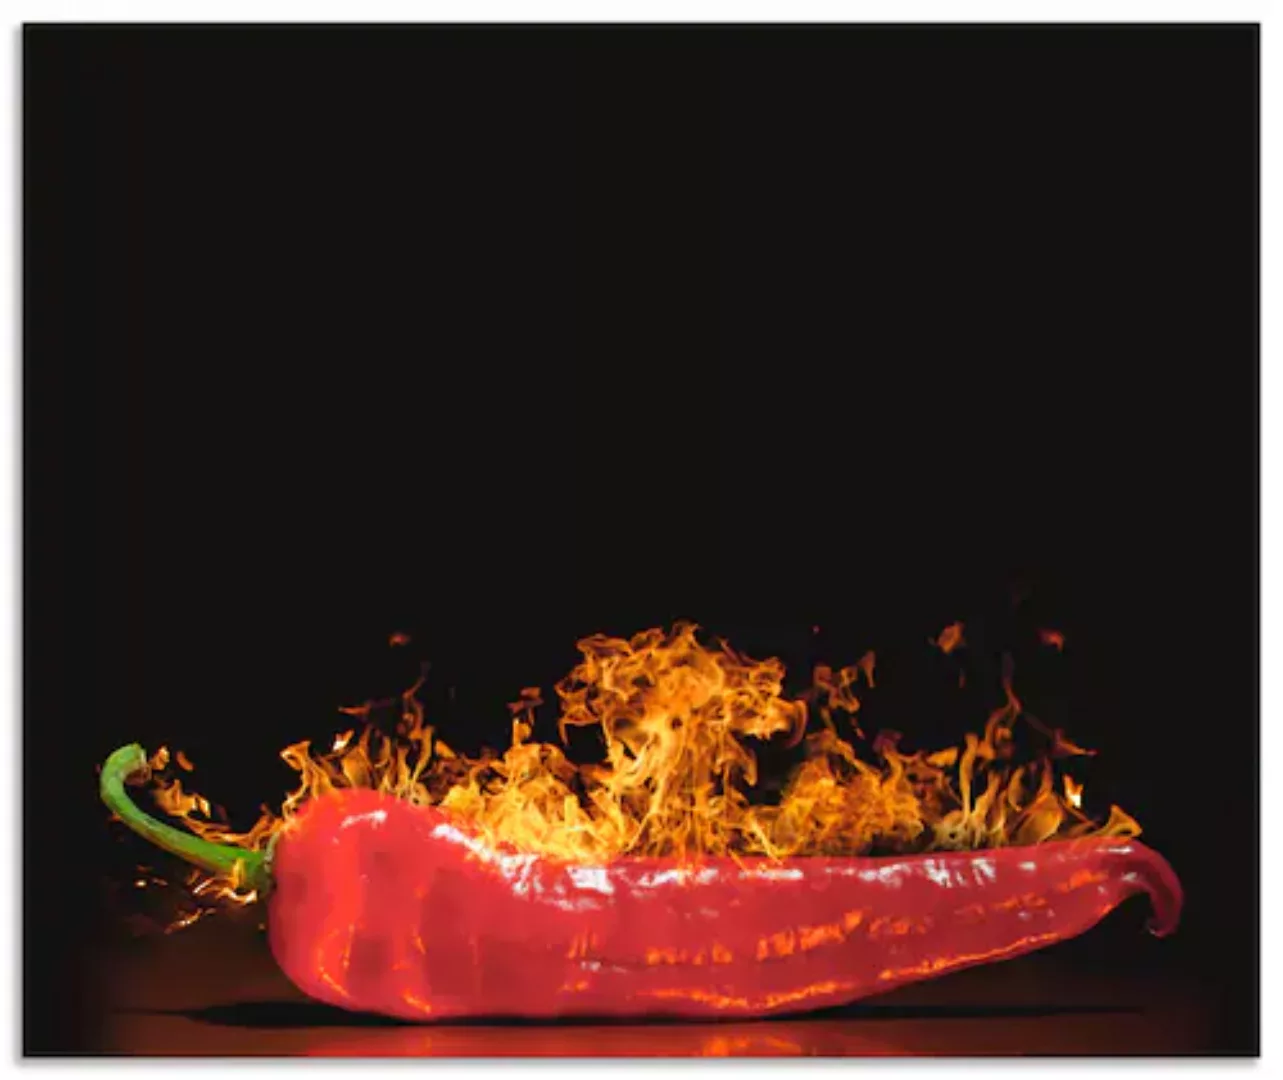 Artland Küchenrückwand »Roter scharfer Chilipfeffer«, (1 tlg.), Alu Spritzs günstig online kaufen